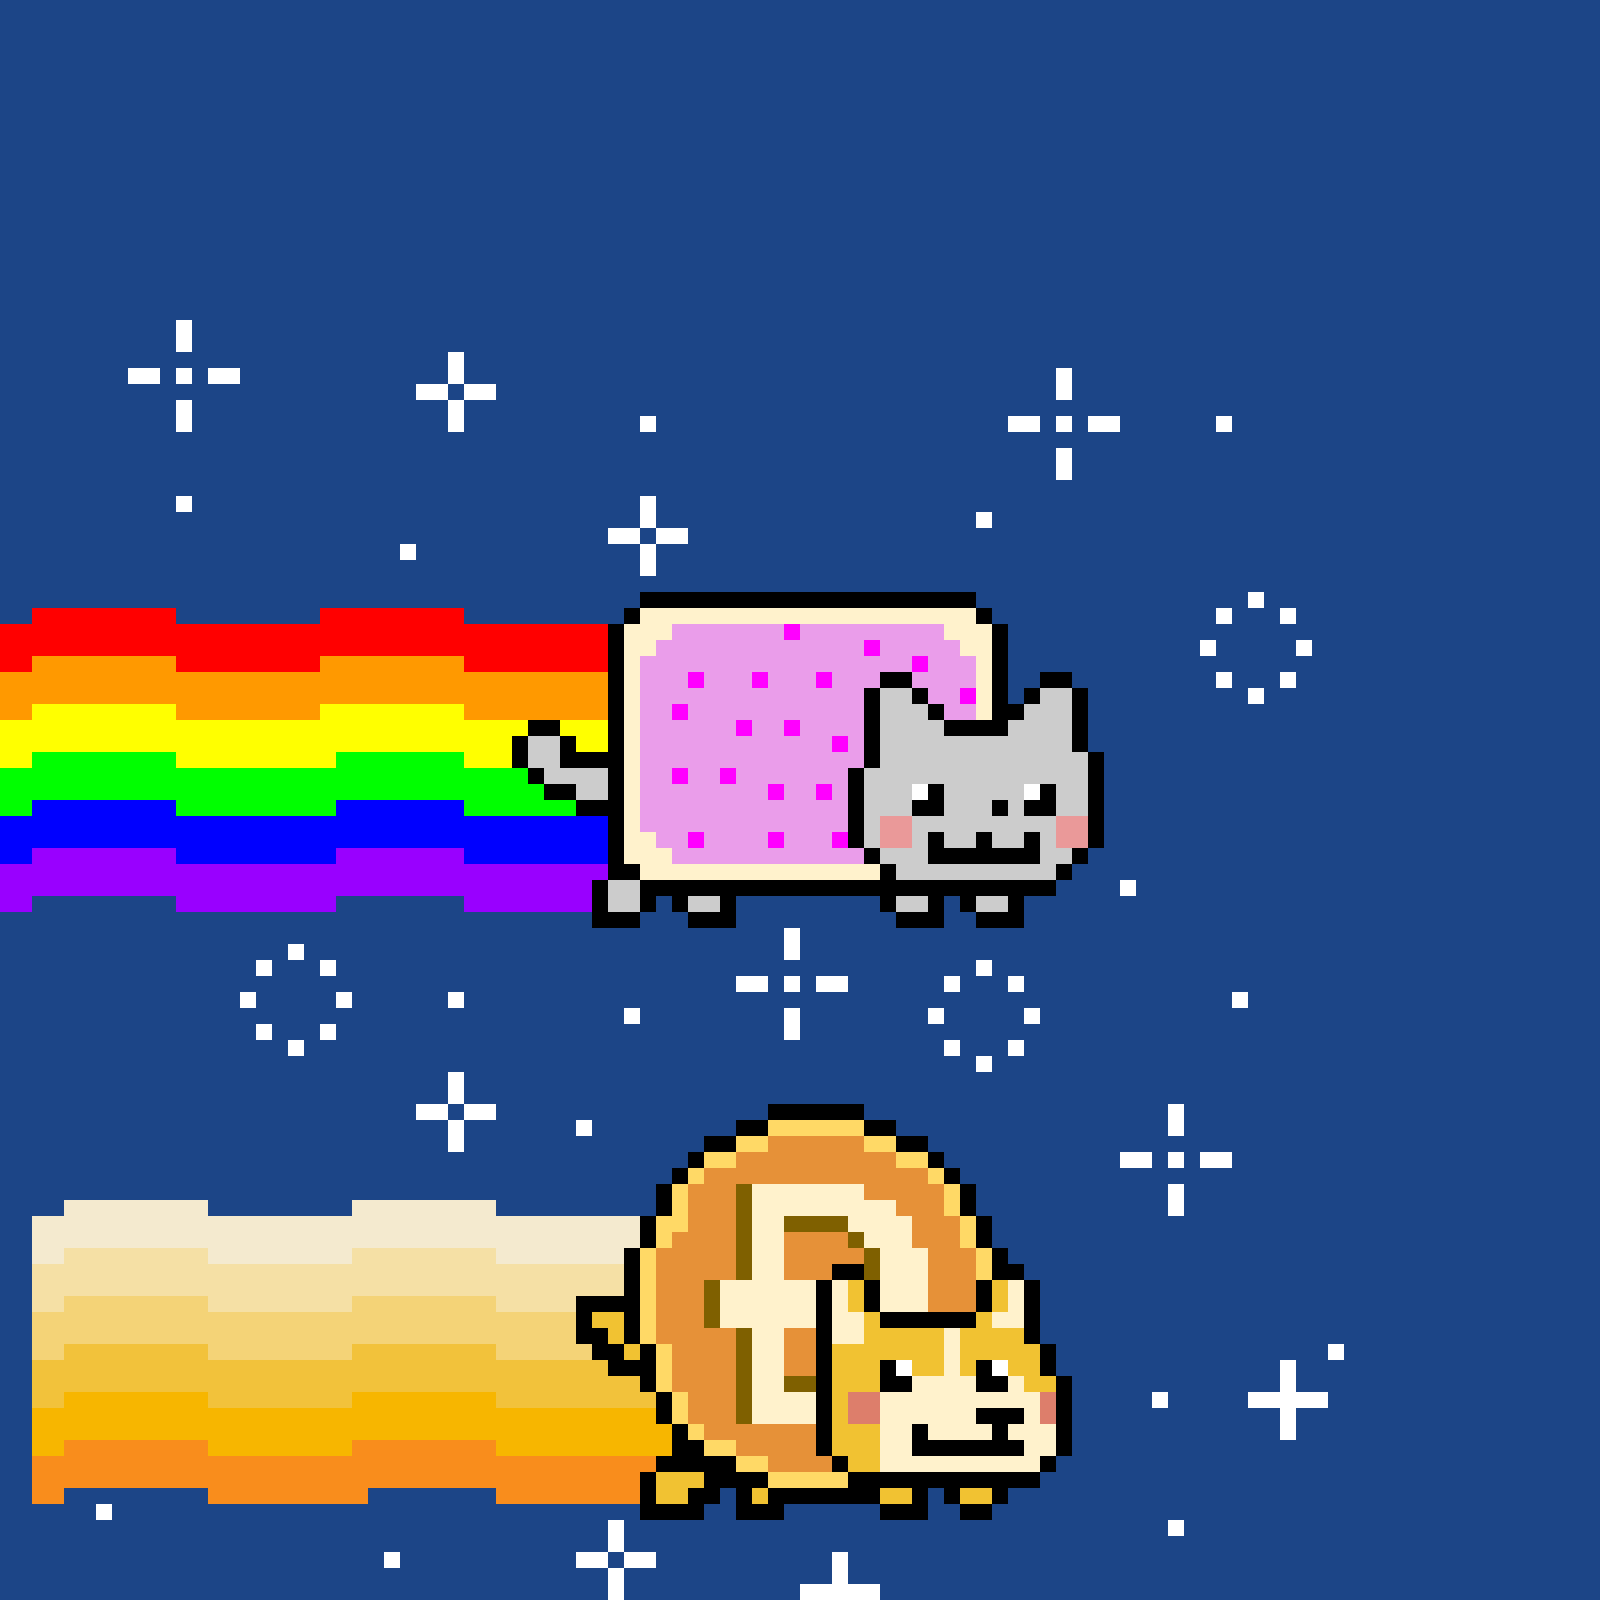 Nyan Cat meets Nyan Doge